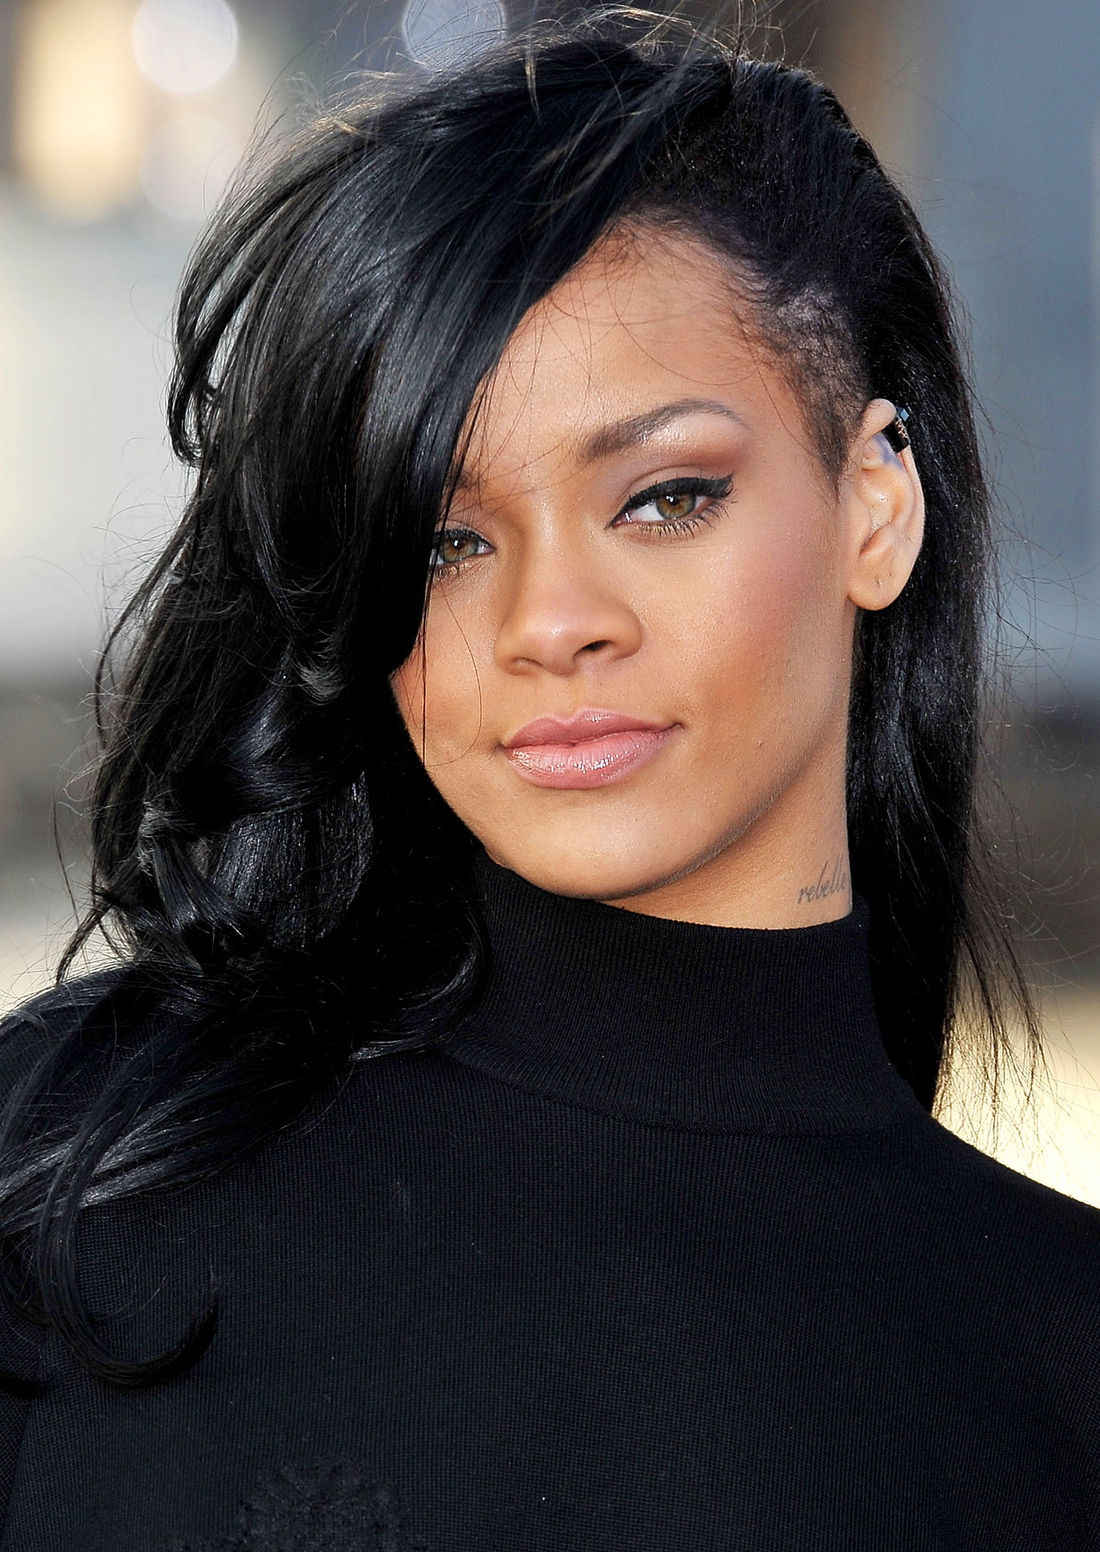 cabelo preto, cabelos longos Ladies Undercut por Rihanna com brinco redondo, penteado lateral